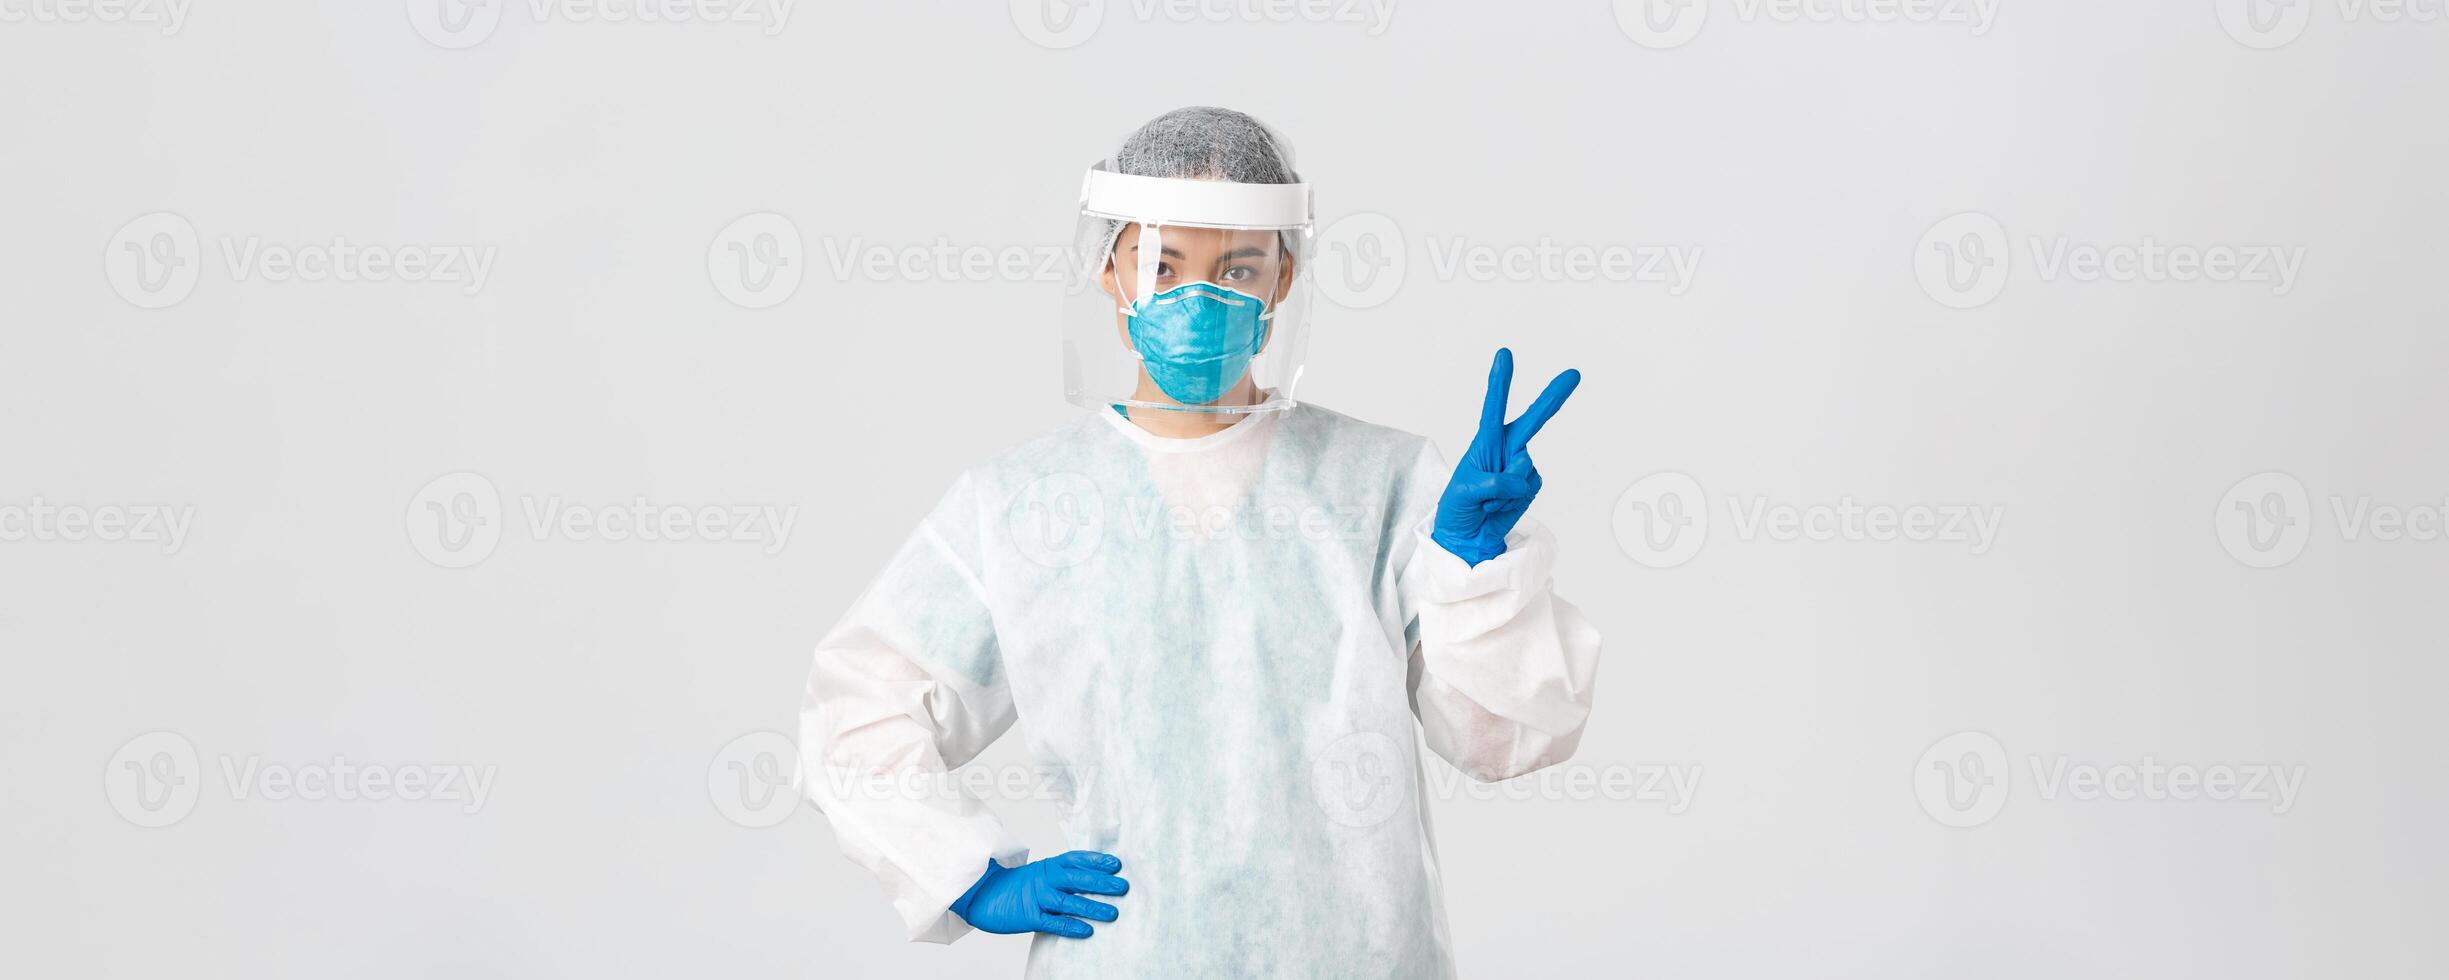 covid19, coronavirus sjukdom, sjukvård arbetare begrepp. sassy asiatisk kvinna läkare, läkare eller tech labb i personlig skyddande Utrustning som visar fred tecken, stående vit bakgrund foto